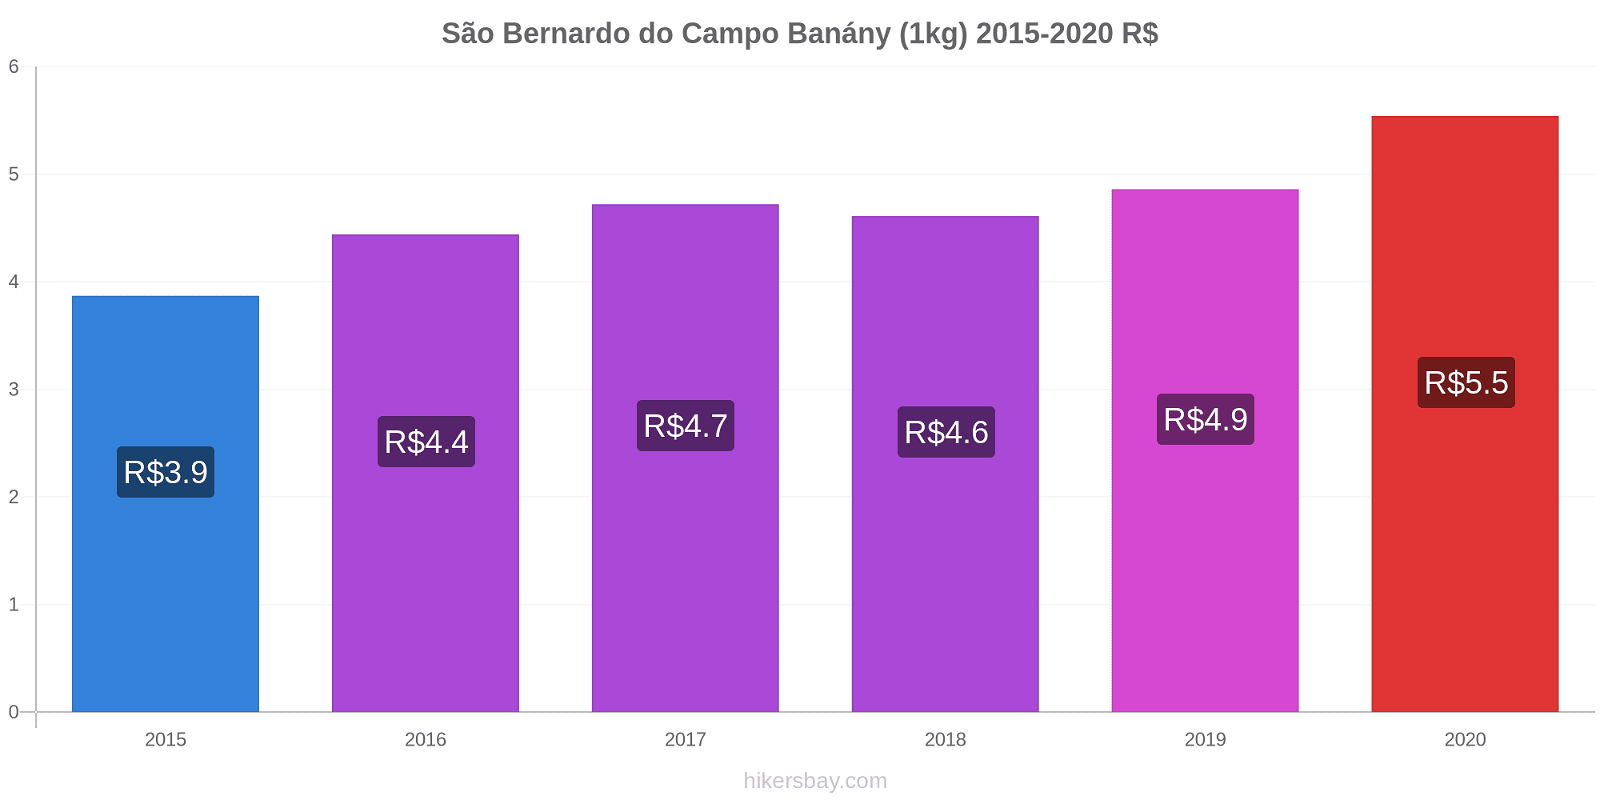 São Bernardo do Campo změny cen Banány (1kg) hikersbay.com